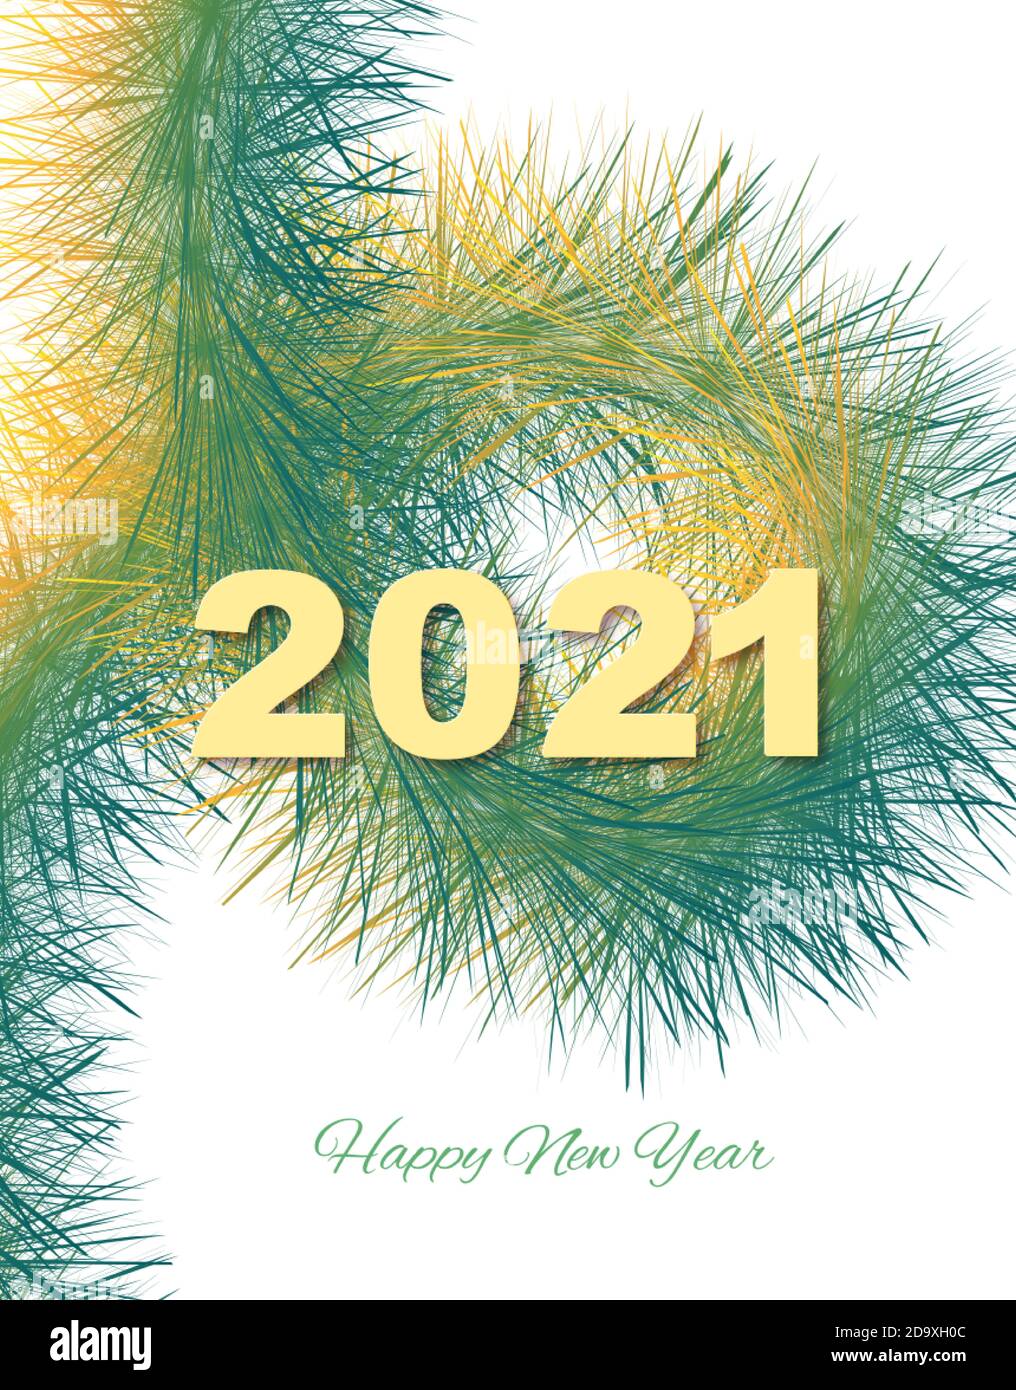 Fond festif Noël ou nouvel an. Abstrait branche de sapin jaune-vert de Noël avec numéros 2021. Arrière-plan de vacances. Vecteur Illustration de Vecteur